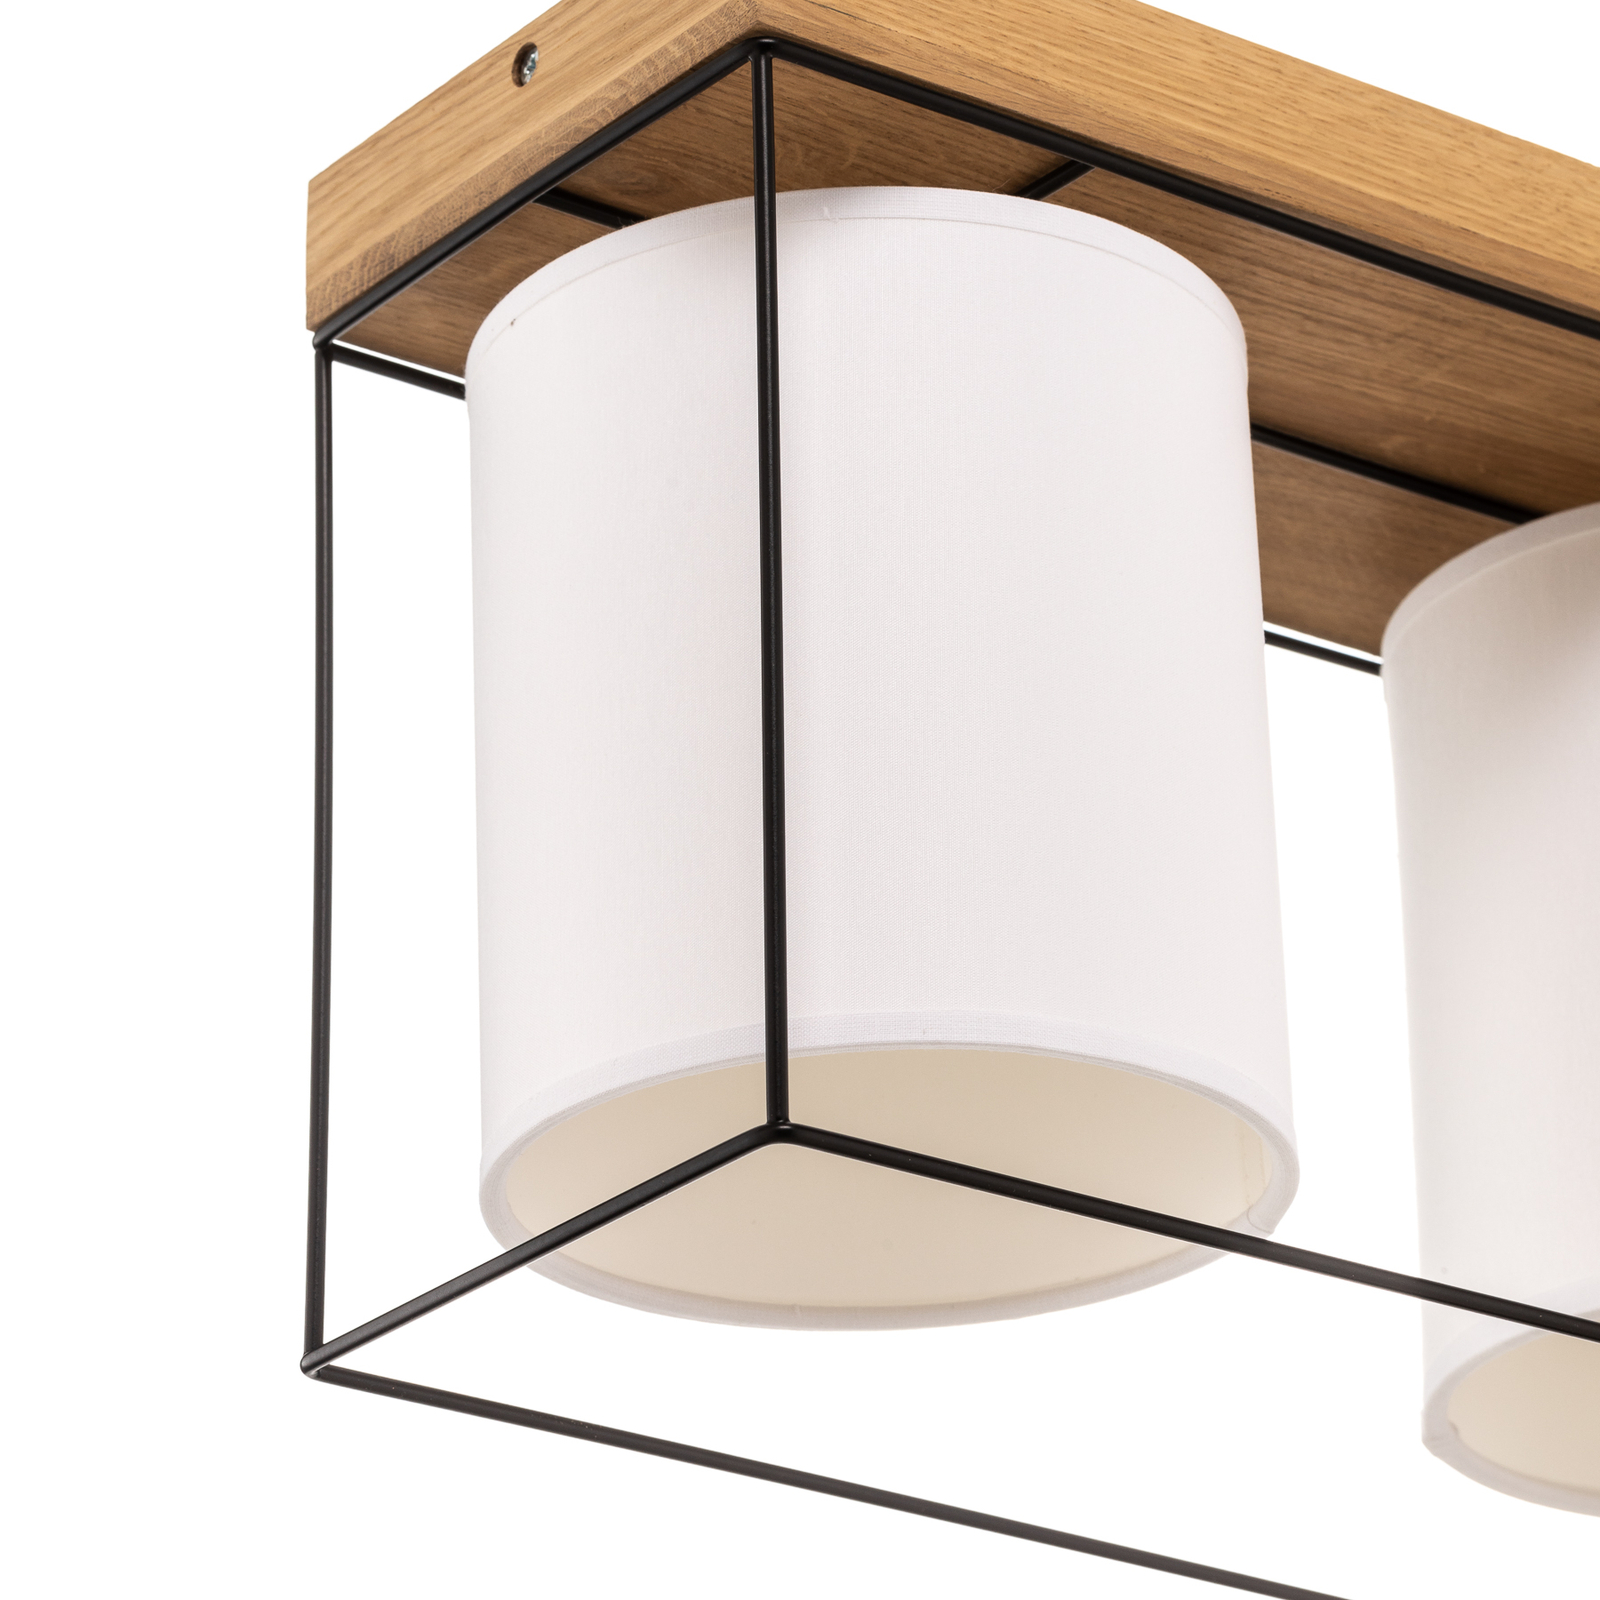 Plafondlamp Trapper, zwart/wit/eiken, 3-lamps